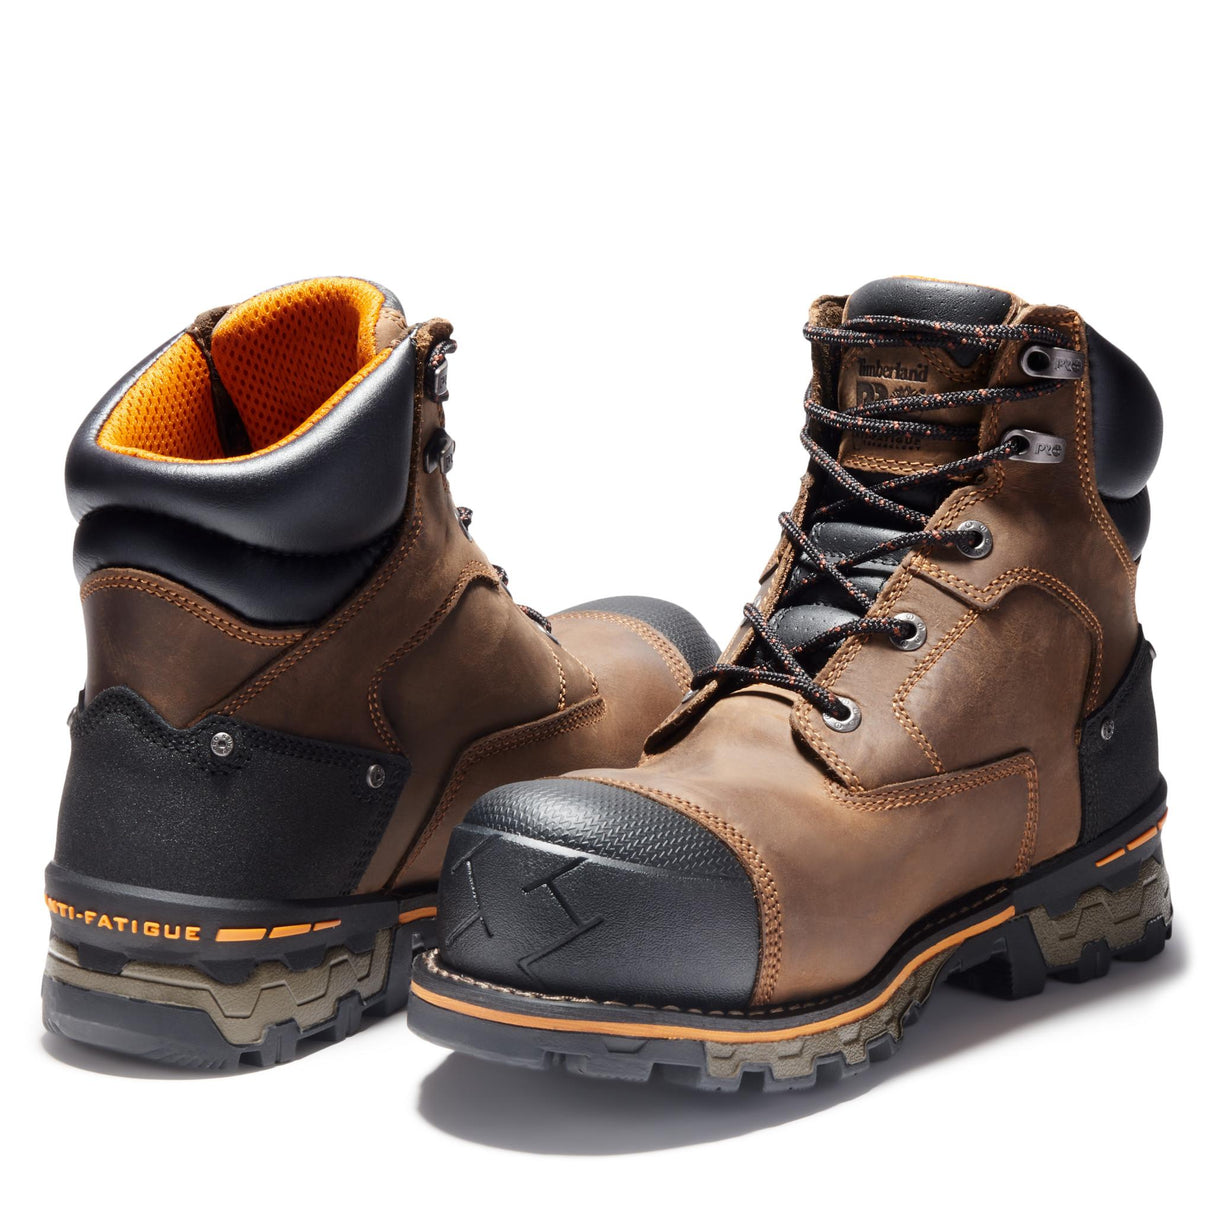 Boondock Men's Composite-Toe Boot Waterproof